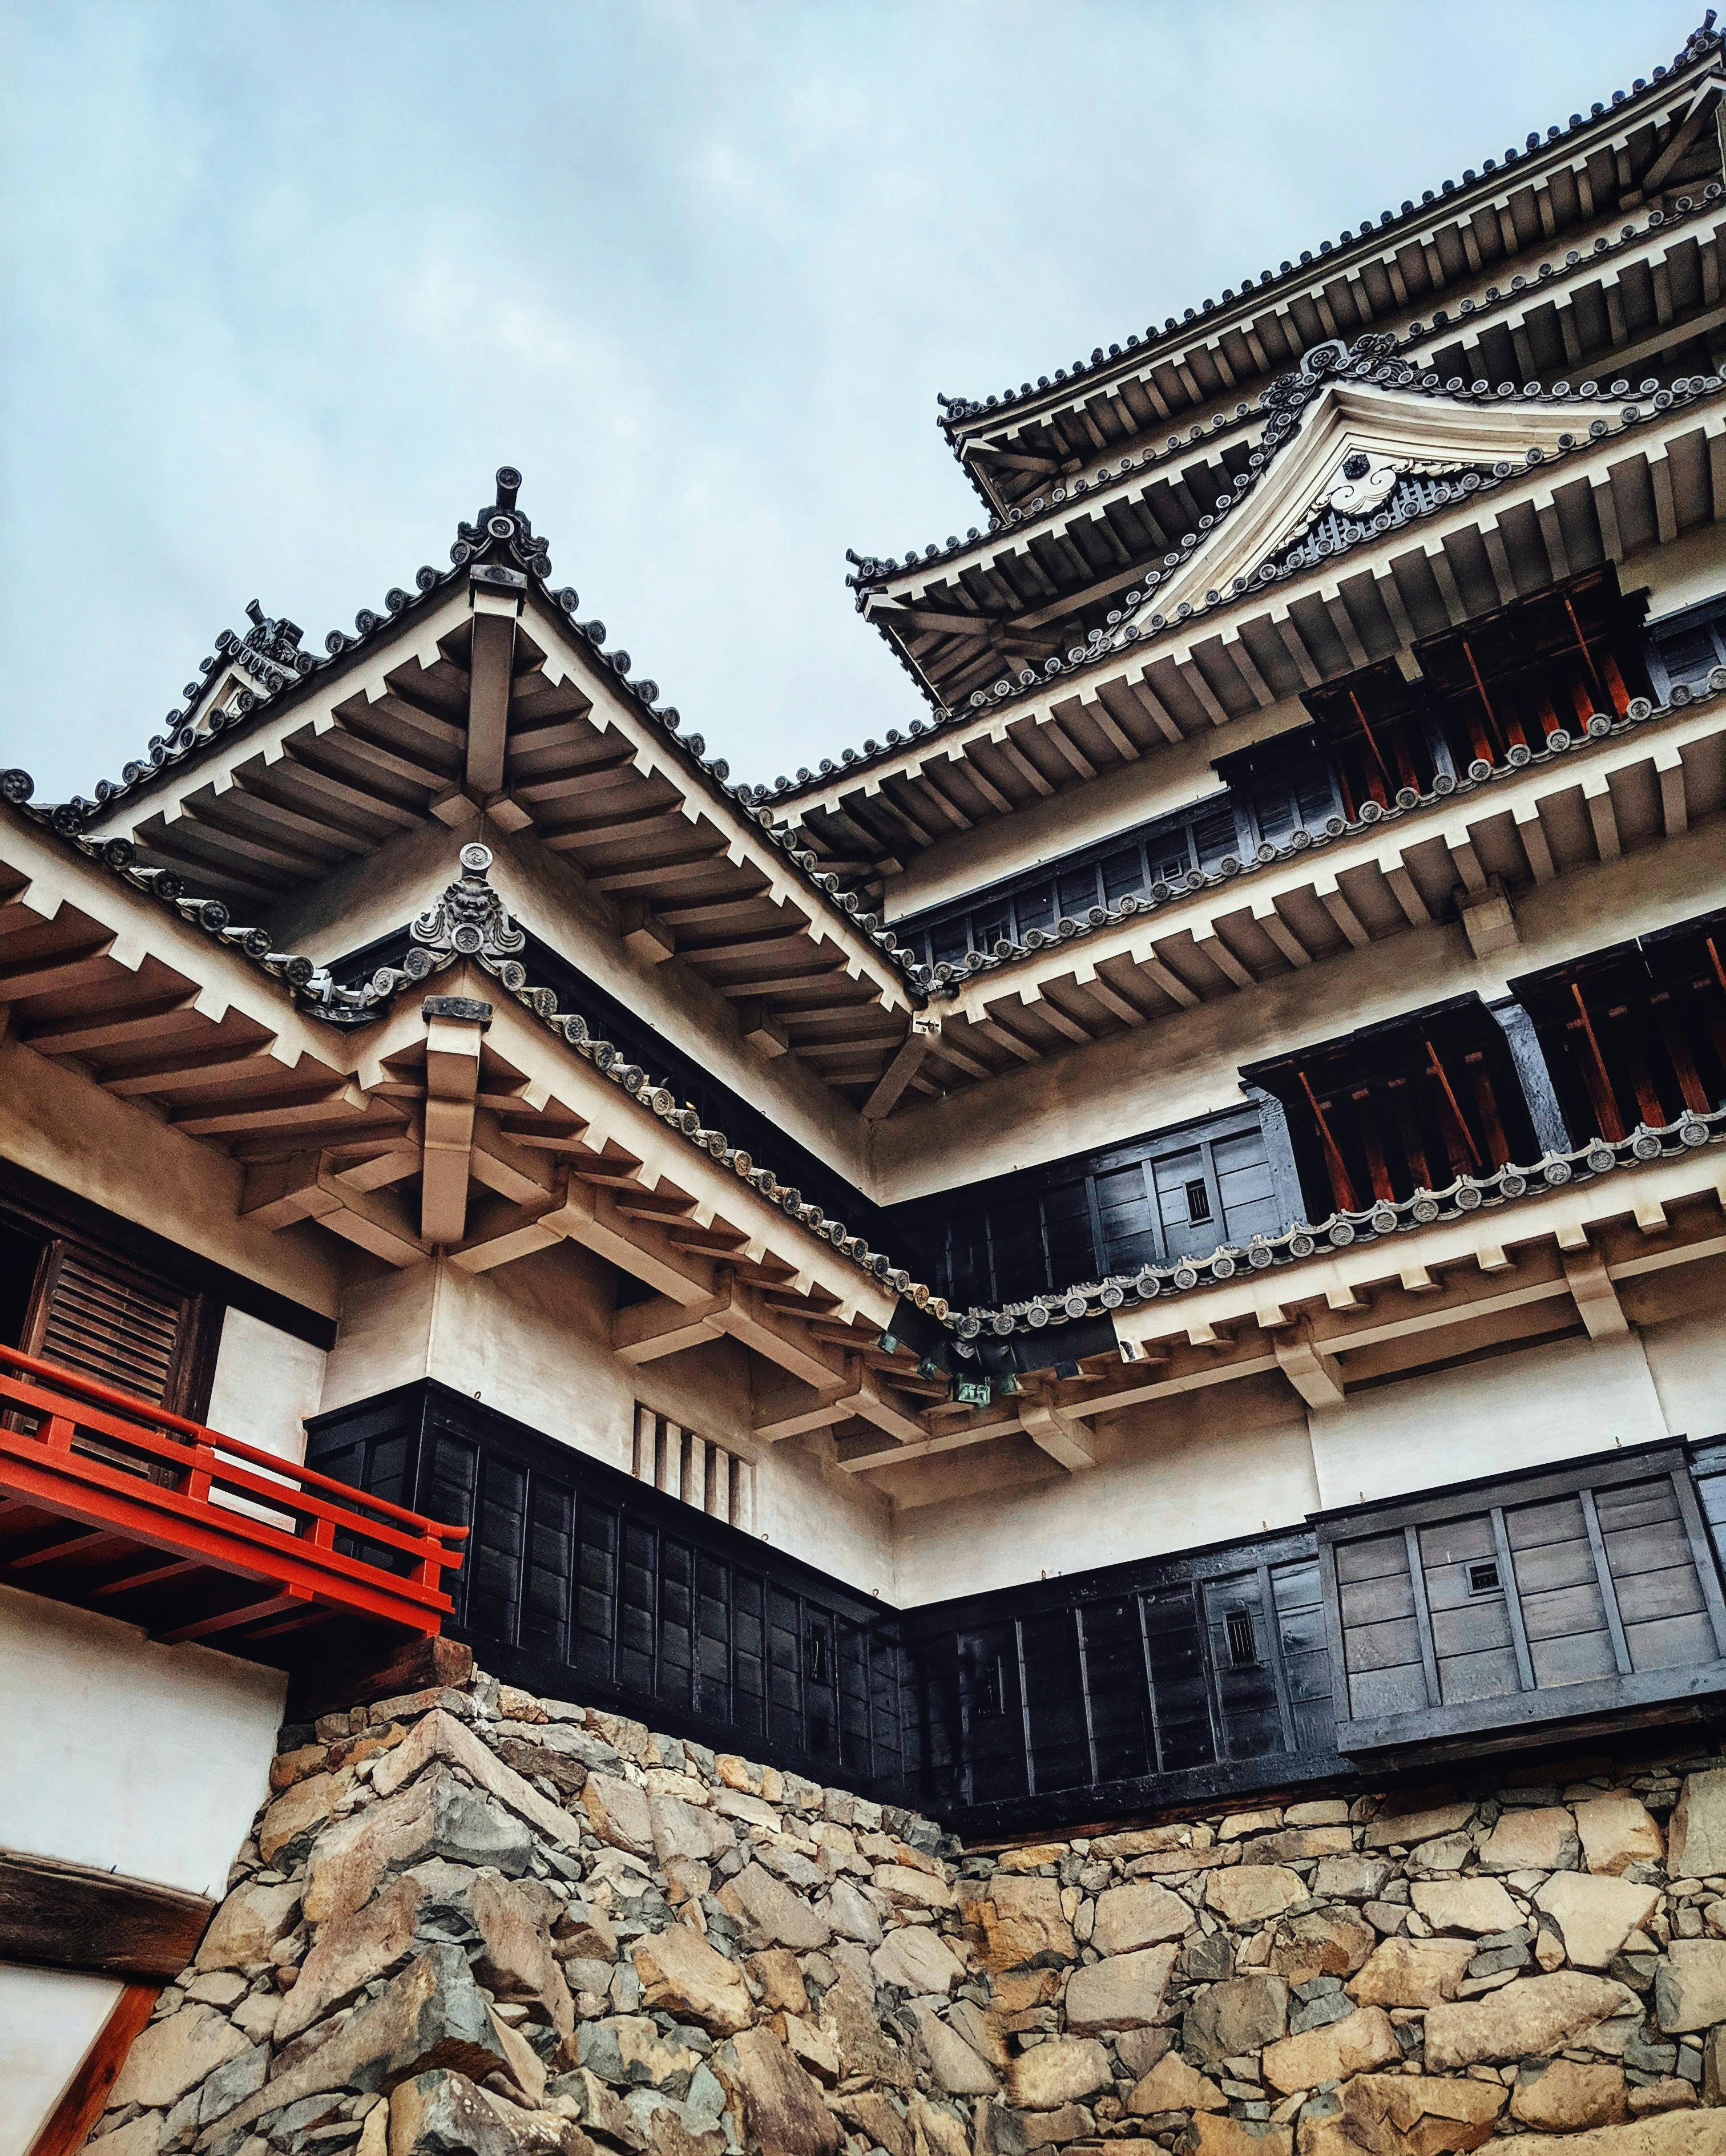 Architectural details of Matsumoto castle, Japan